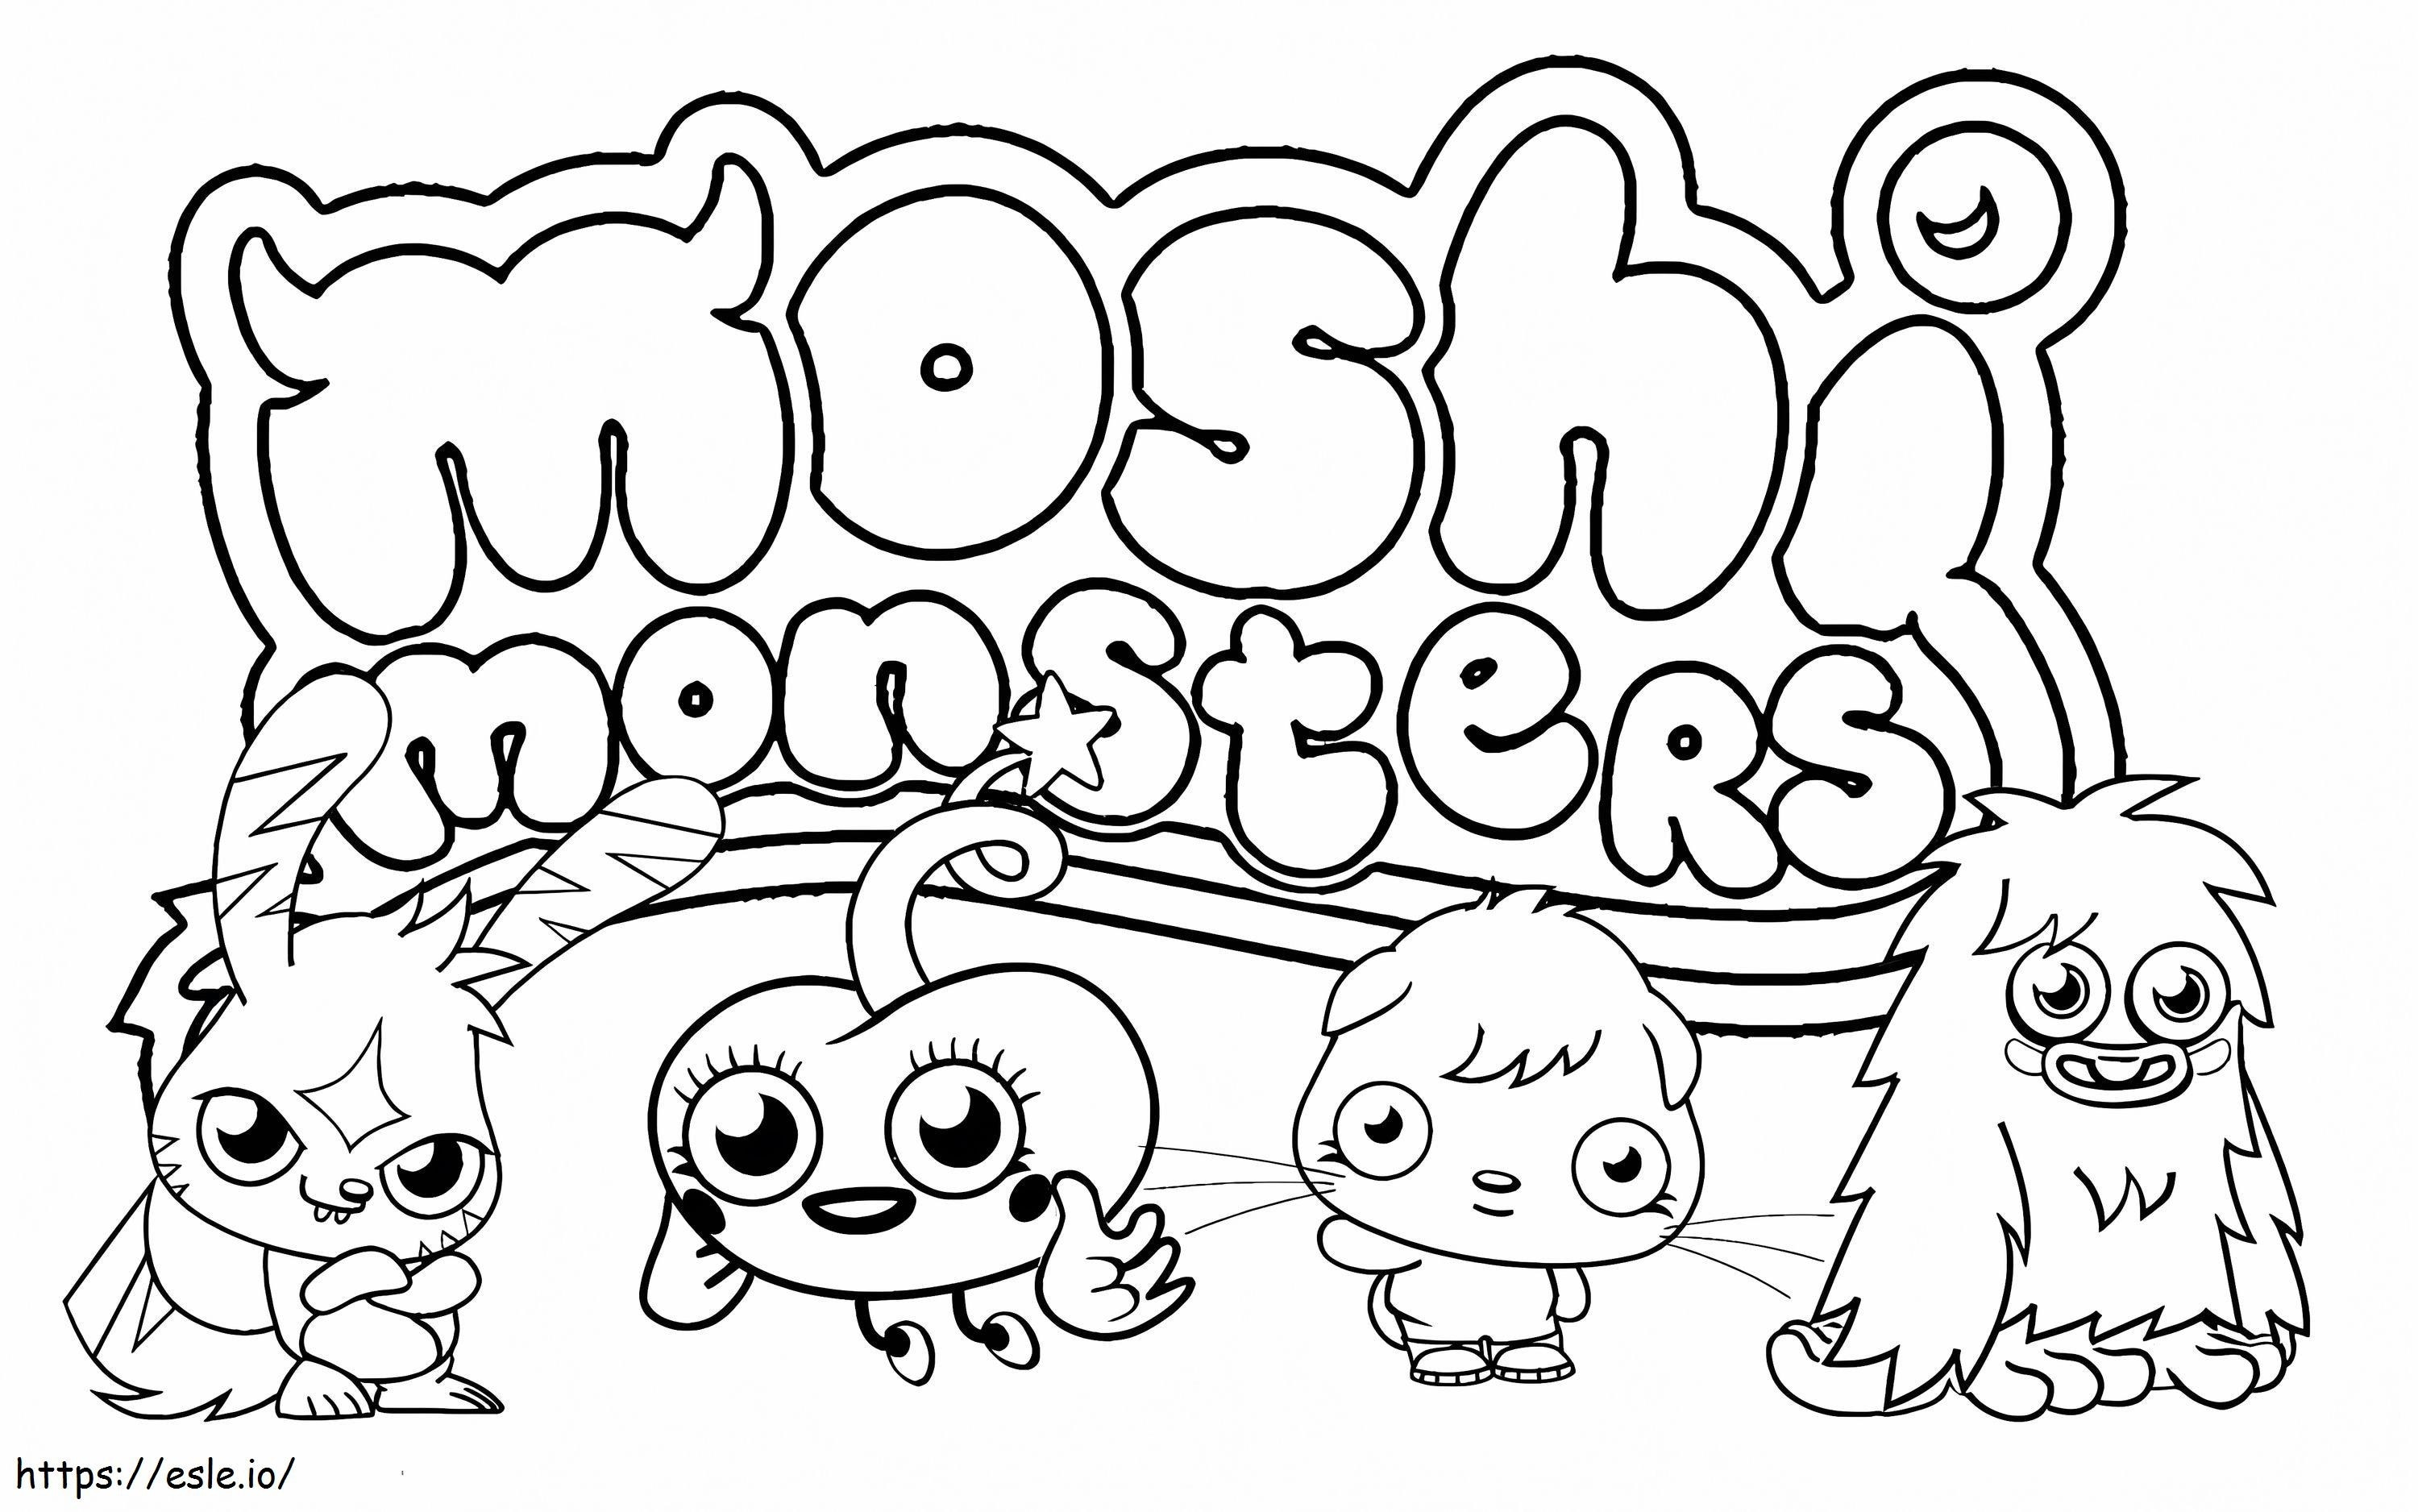 Drucken Sie Moshi-Monster ausmalbilder